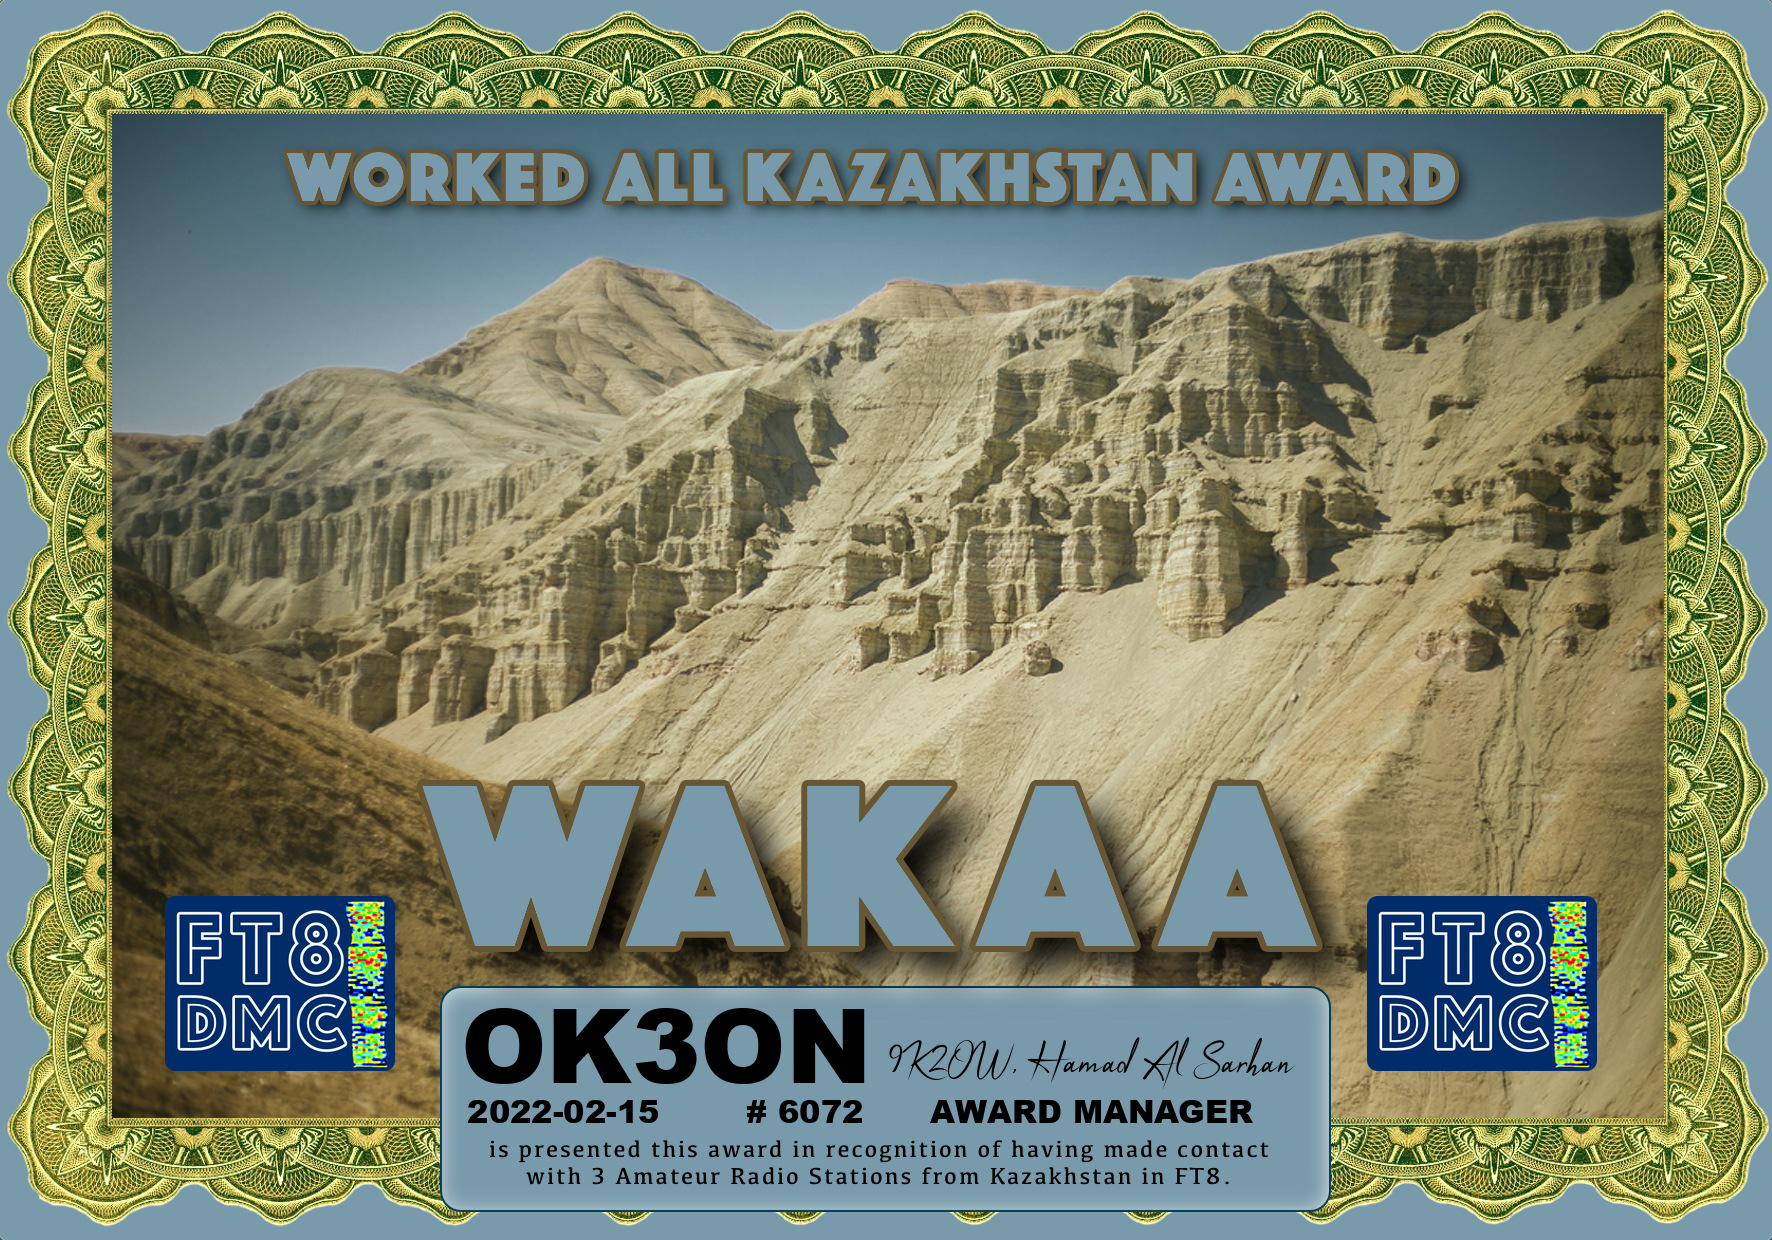 awards/OK3ON-WAKAA-WAKAA_FT8DMC.jpg